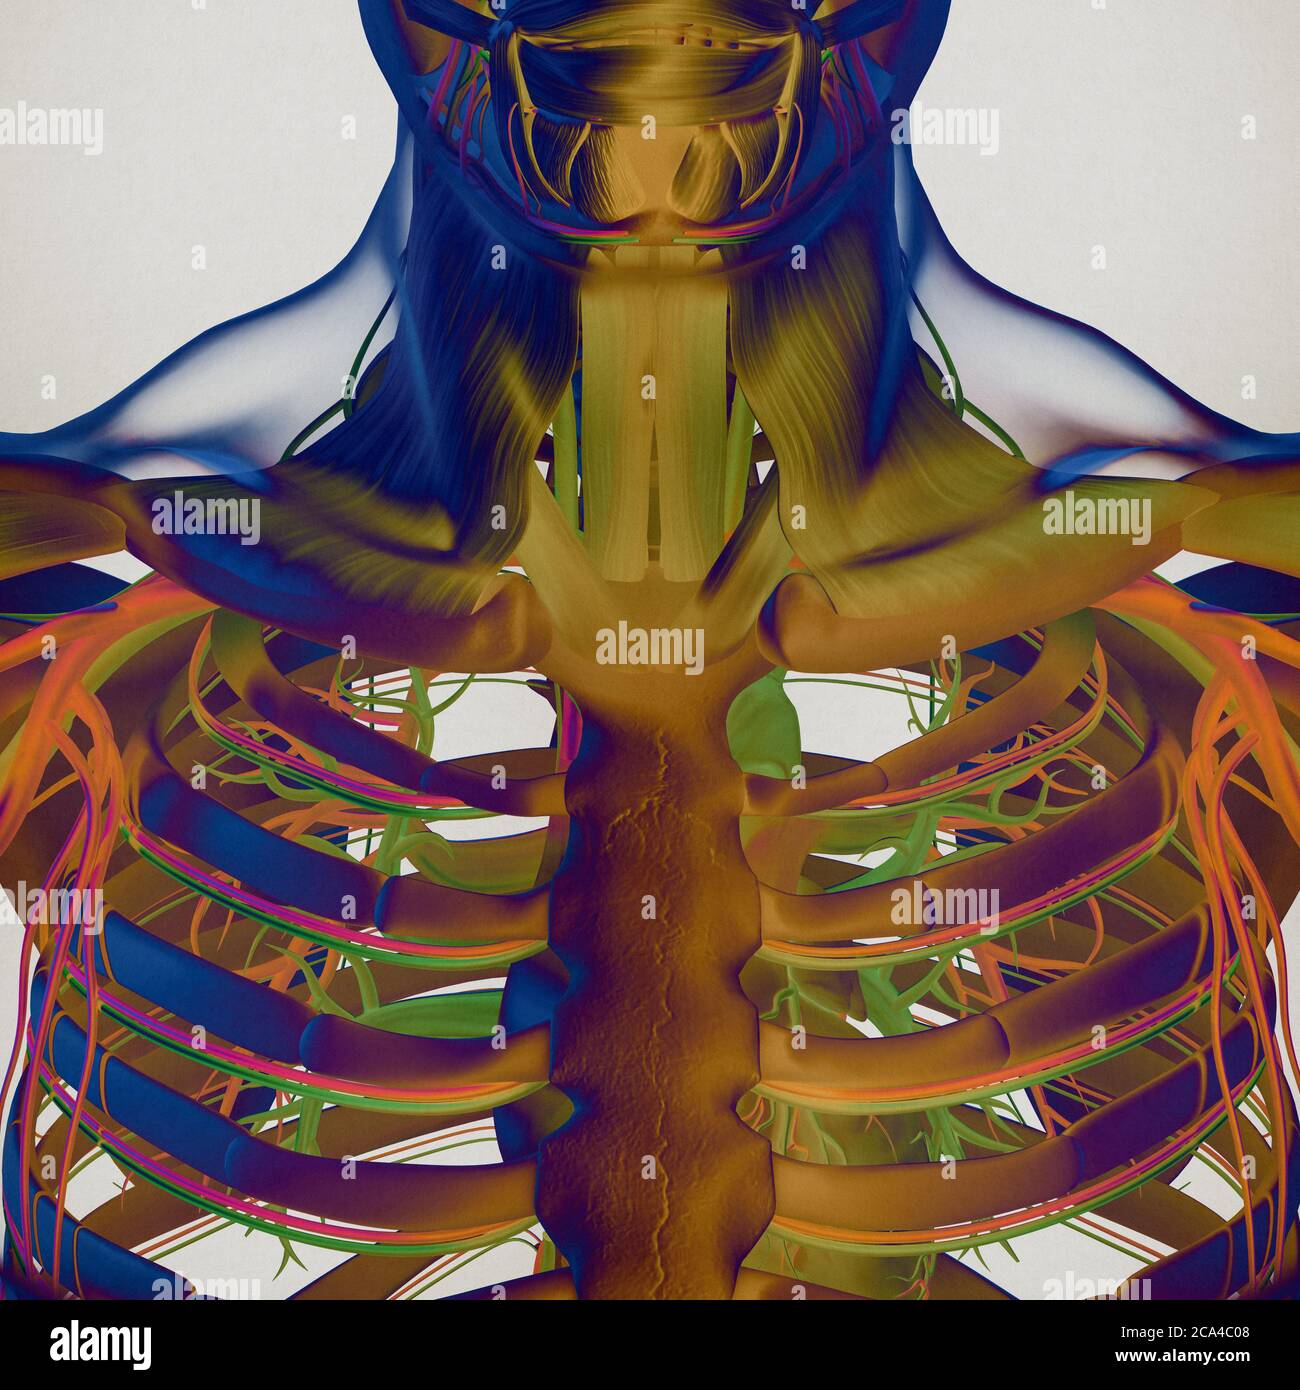 Abbildung Der Menschlichen Anatomie Brust Brustkorb Gefäßsystem 3d Illustration 